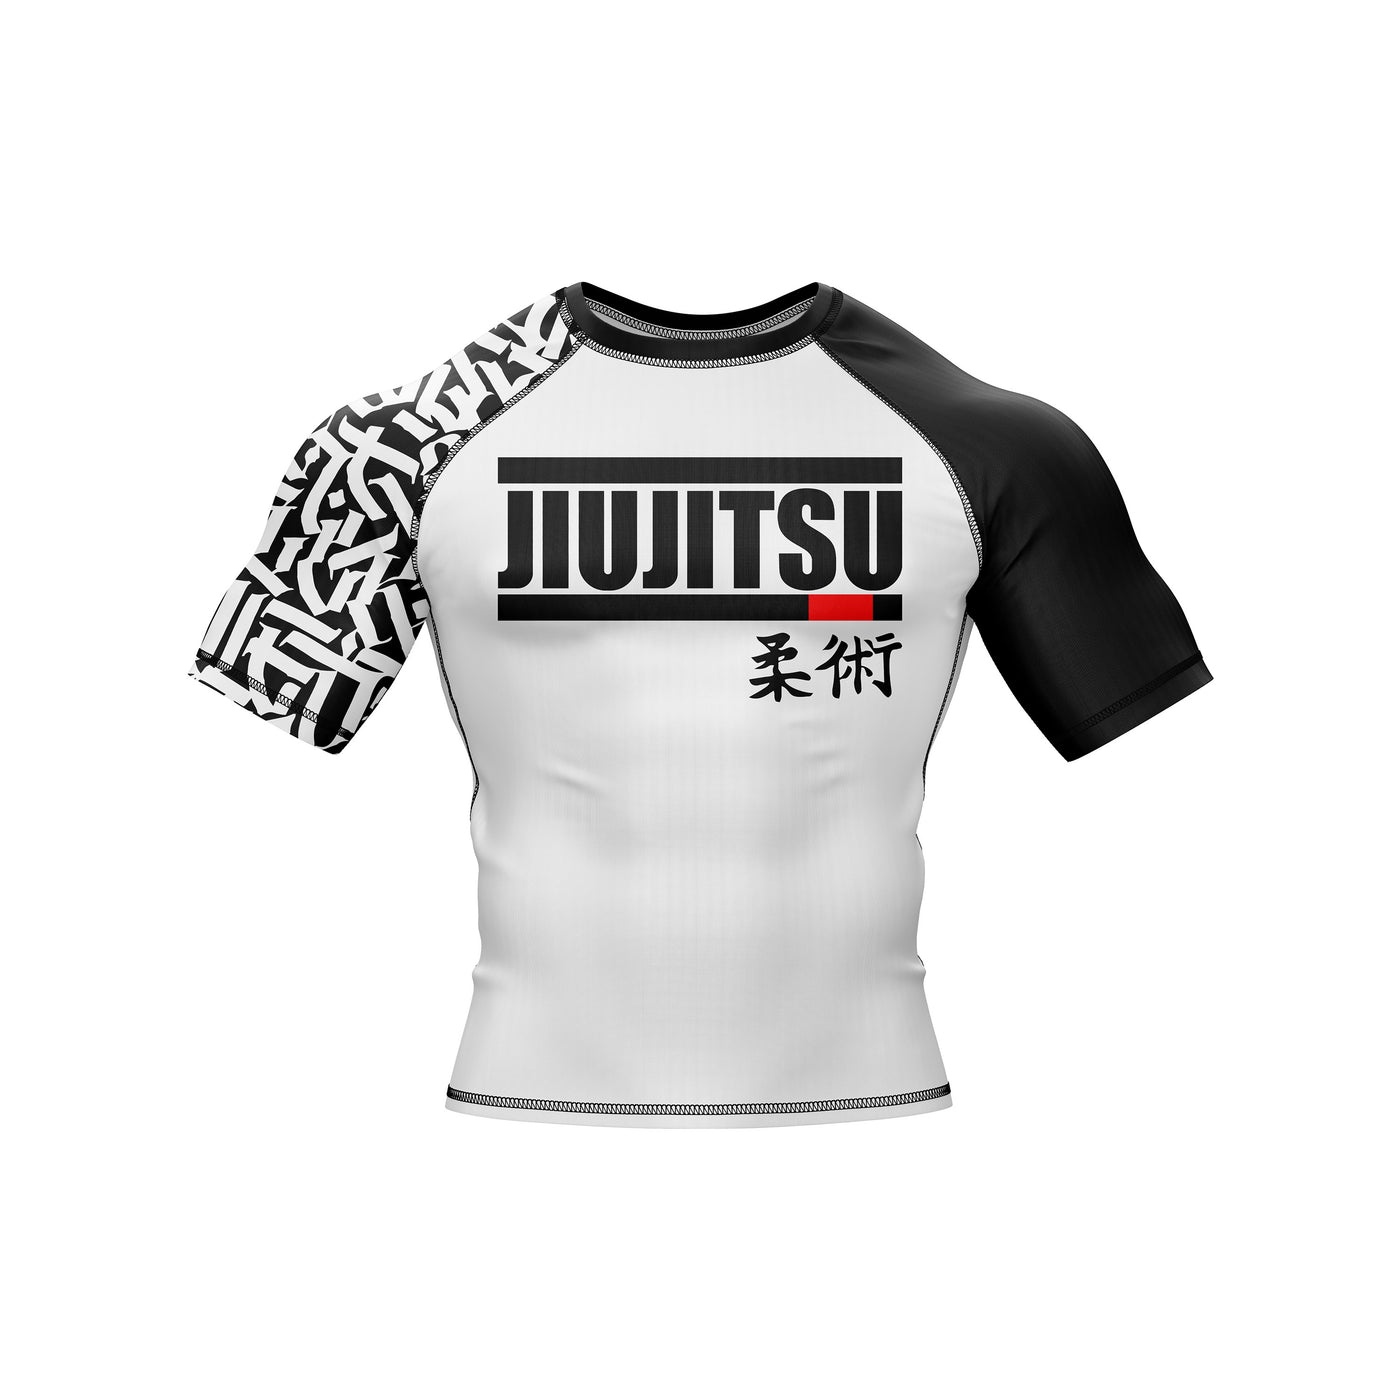 Classic Jiu Jitsu Compression Top